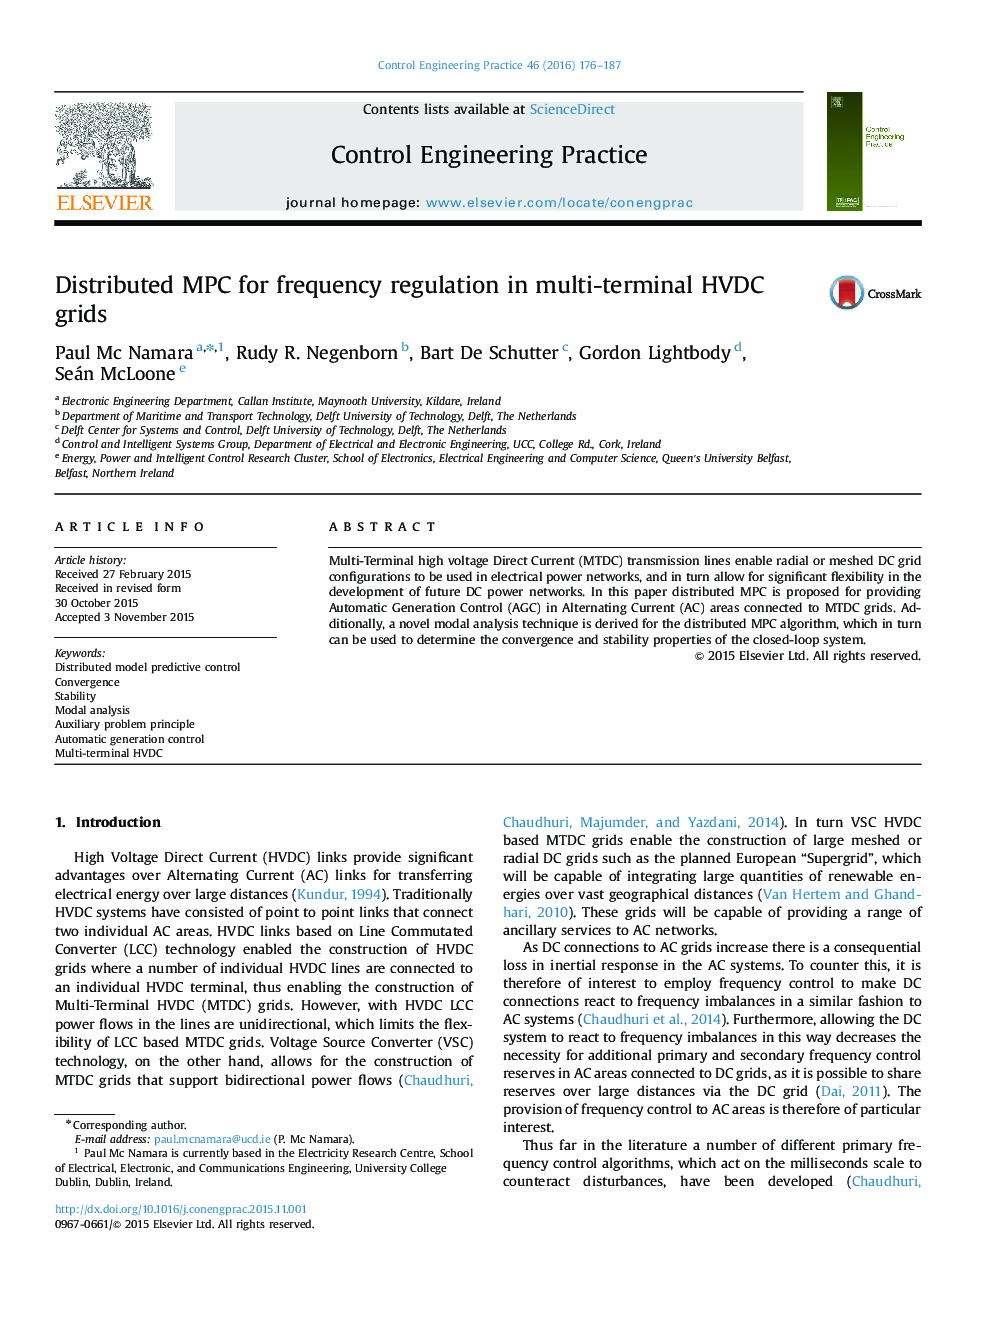 MPC توزیع شده برای تنظیم فرکانس در شبکه های HVDC چند ترمینال